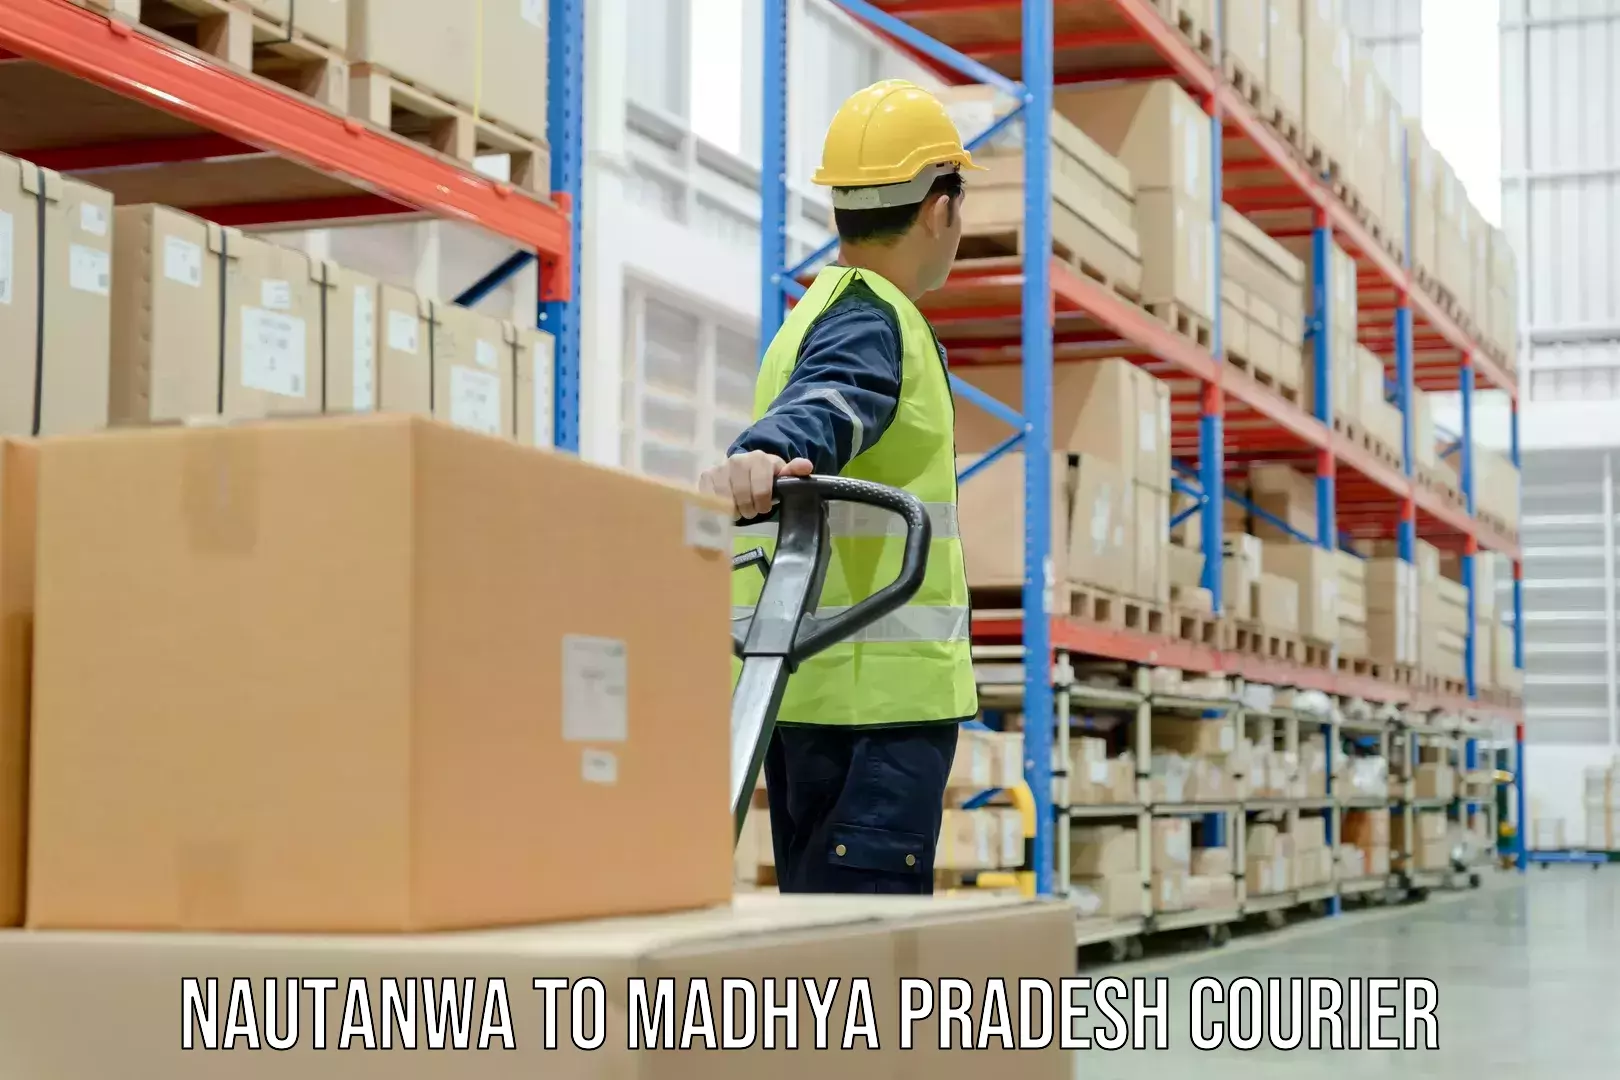 Urban courier service Nautanwa to Madhya Pradesh